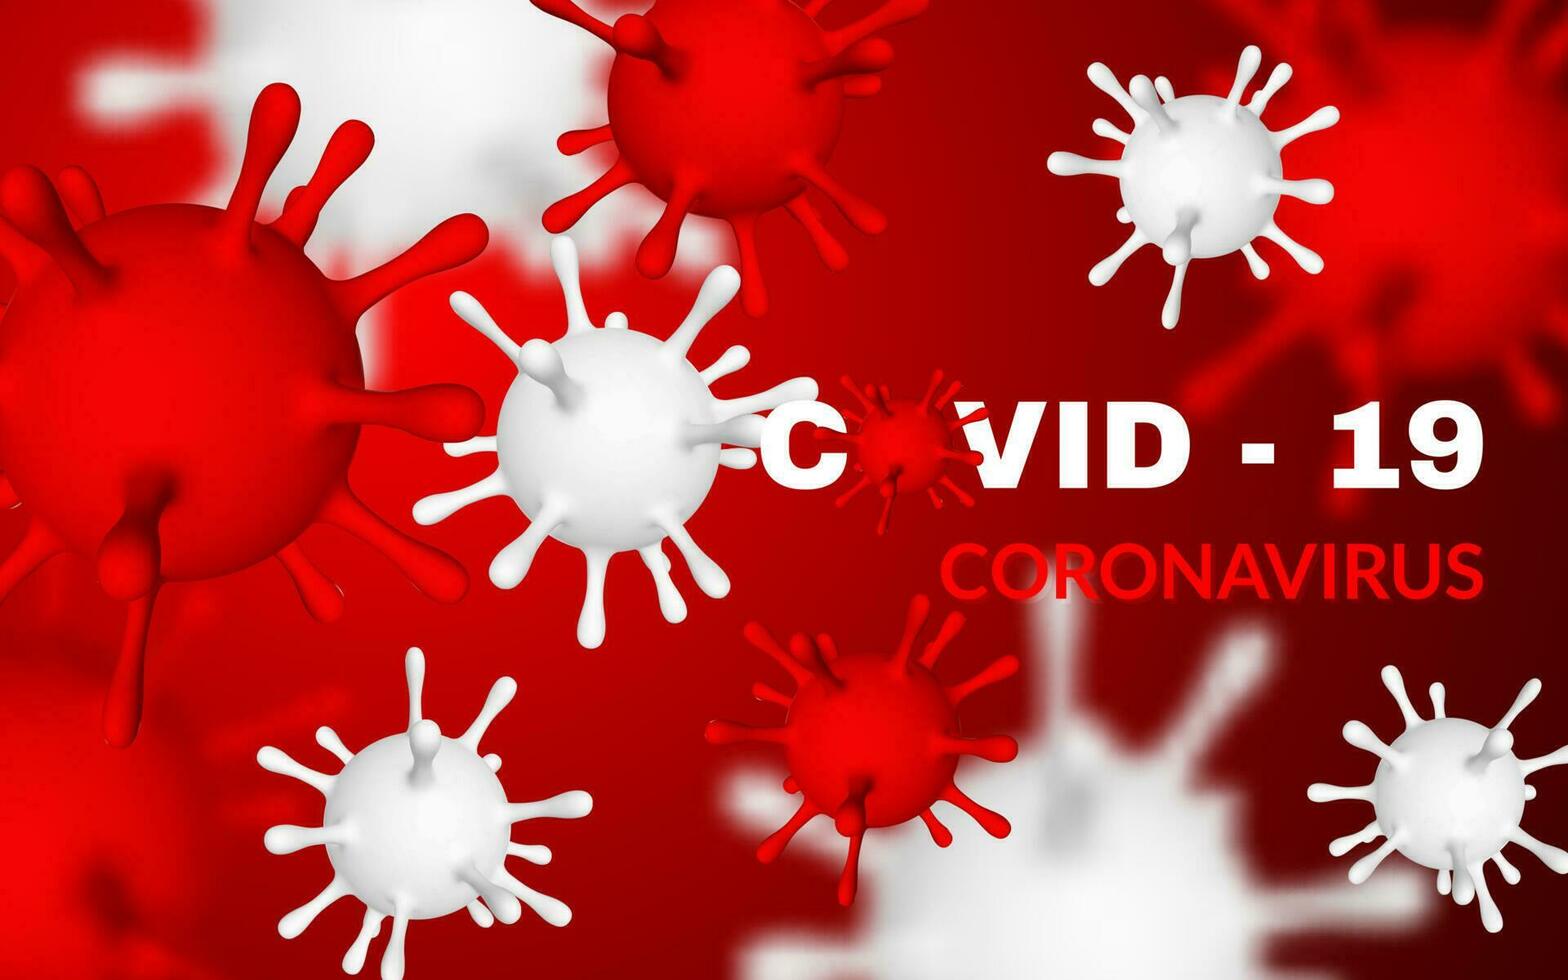 coronavirus covid19, 2019-nkov. 3d illustration av virus enhet. värld pandemi begrepp. vektor illustration